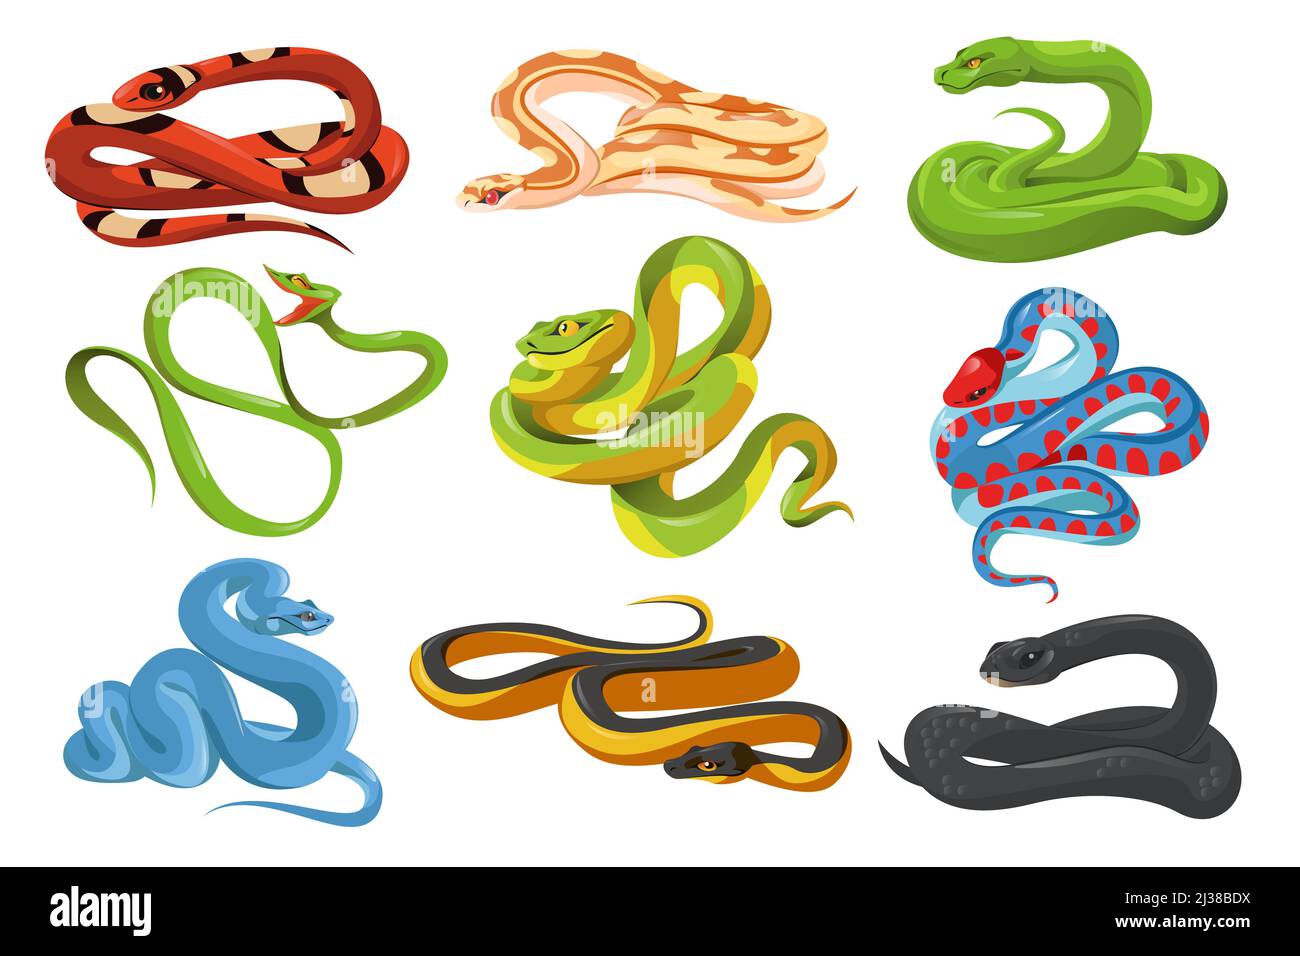 Serpents, serpents tropicaux isolés sur fond blanc. Mamba noir, serpent laiteux écarlate, jarretière californienne à côtés rouges, python d'arbre vert, trimeresurus Illustration de Vecteur